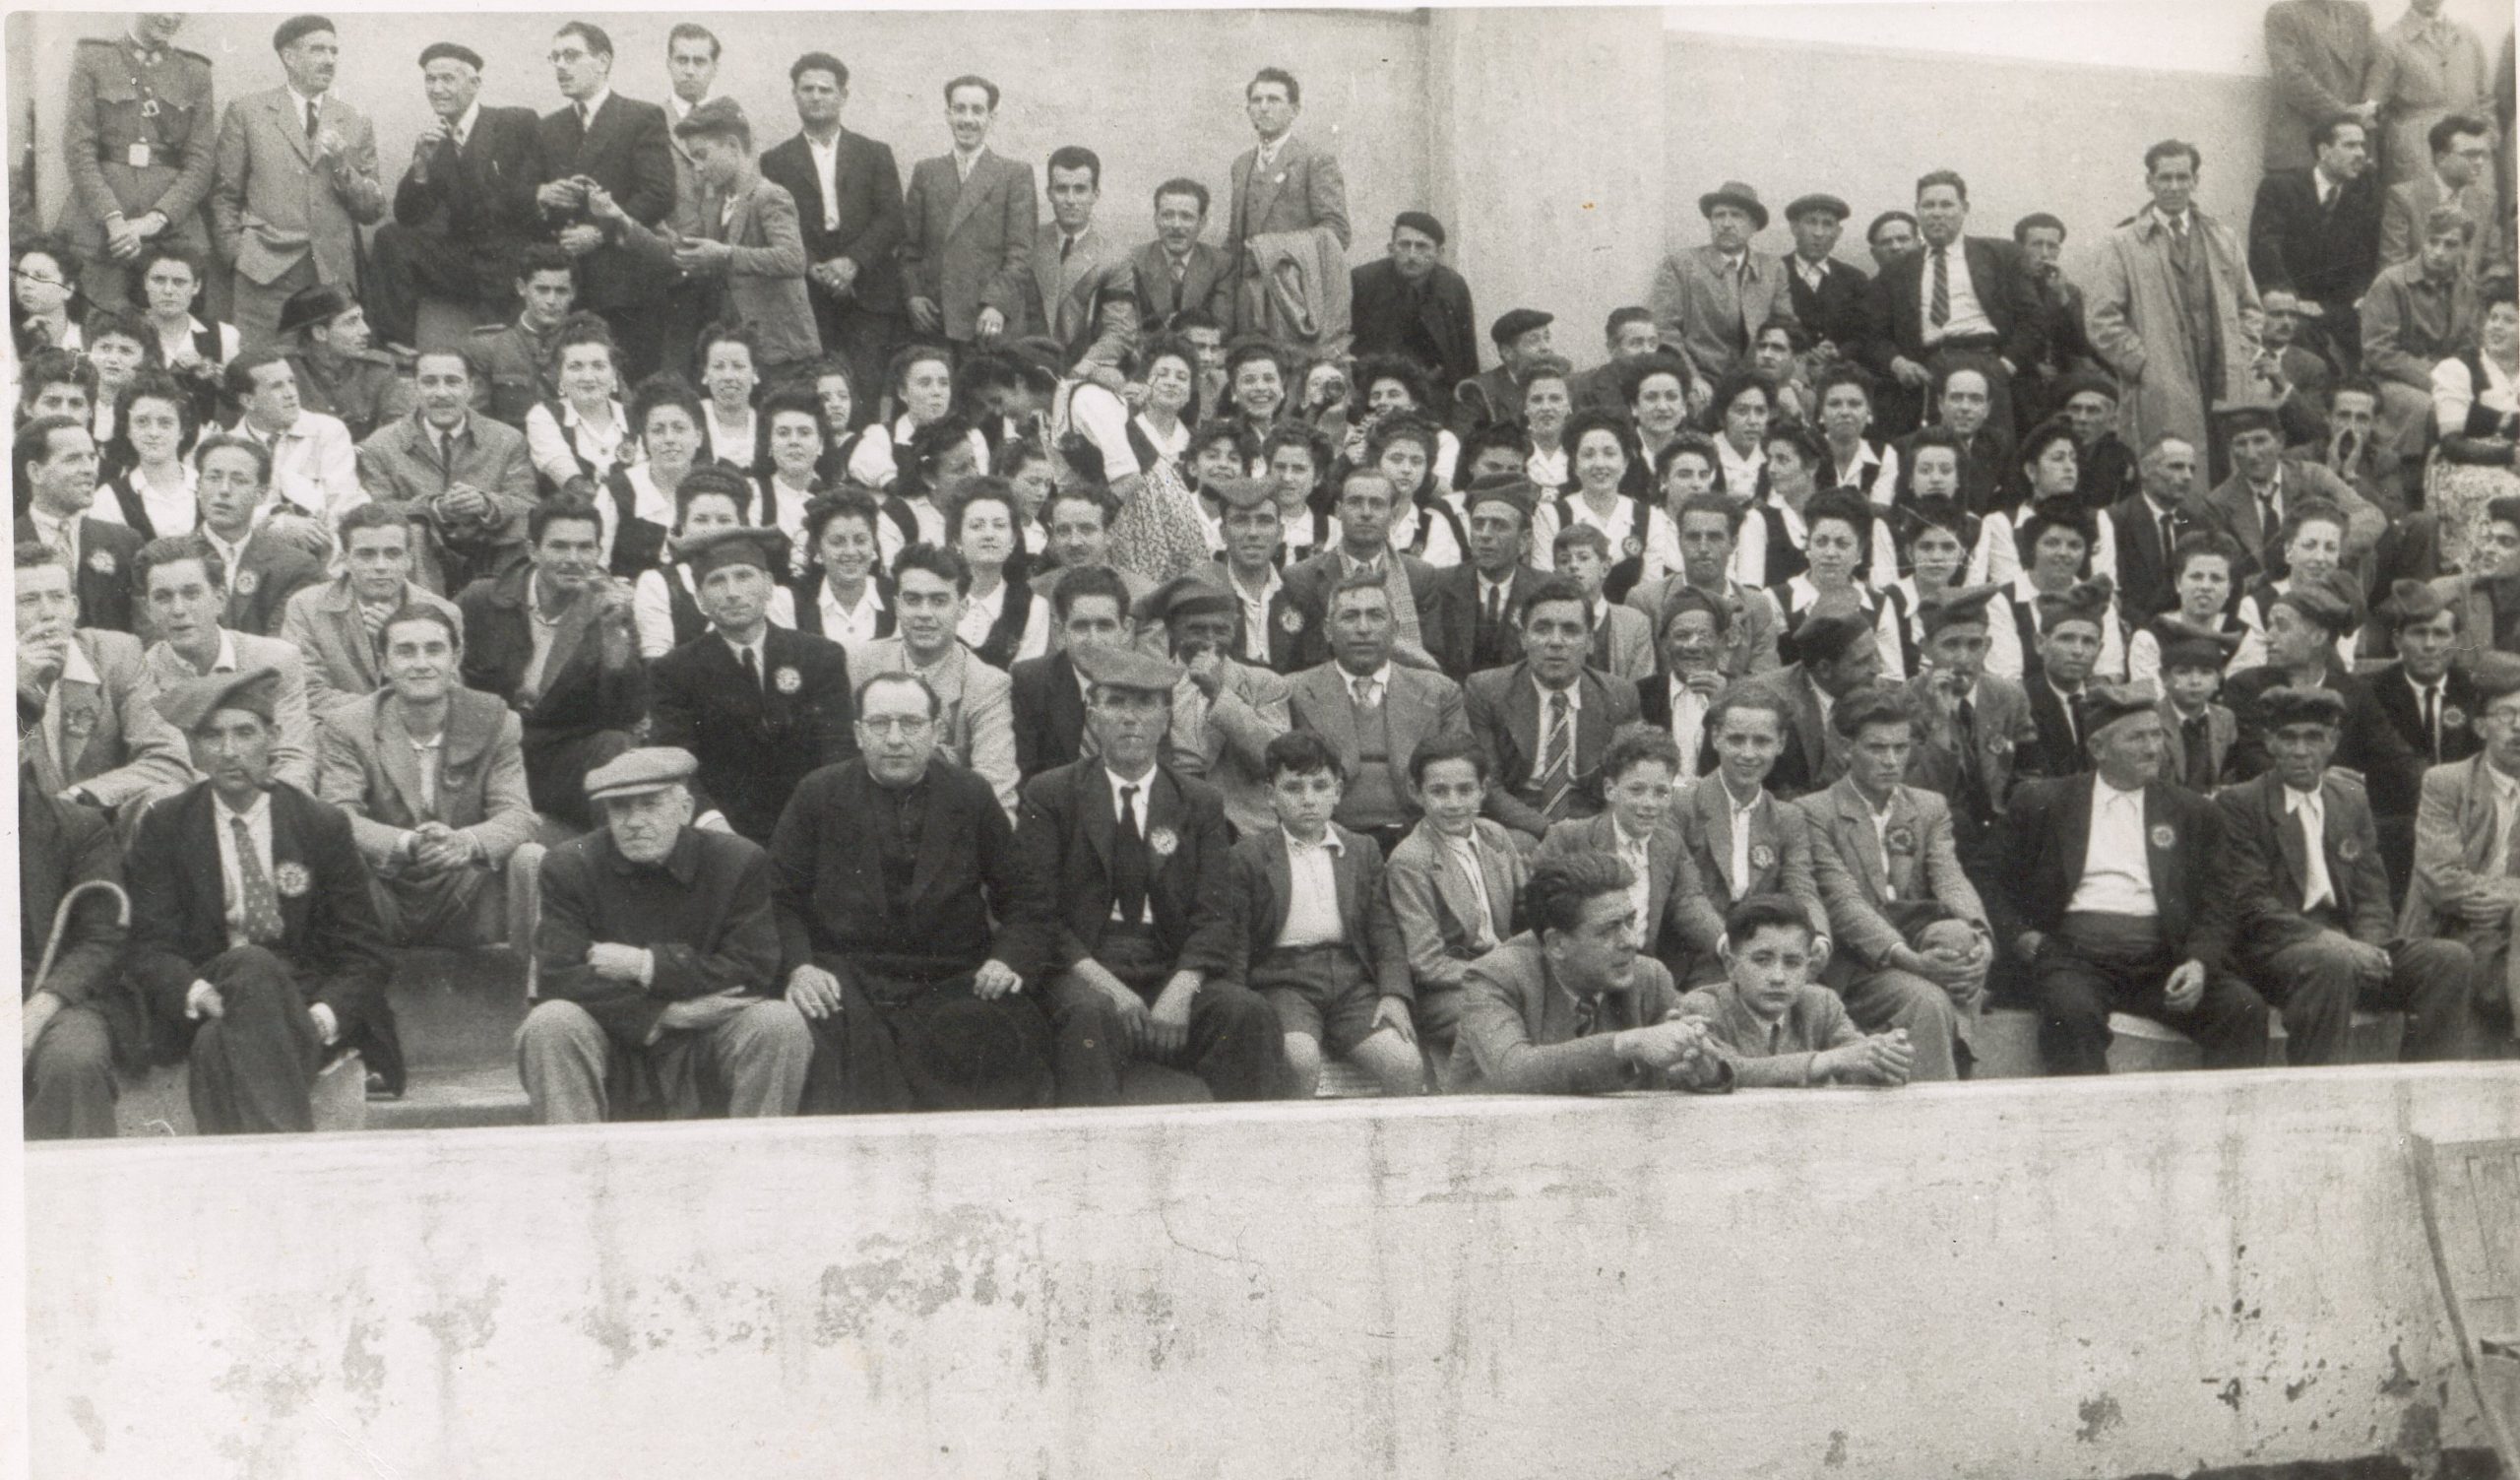 L'Orfeó El Rossinyol de les Garrigues a les graderies dl camp del Nàstic de Tarragona, l'11 de maig de 1947. Mossèn Vila a primera fila. Font: Arxiu fotogràfic de l'Associació Cultural El Cérvol.